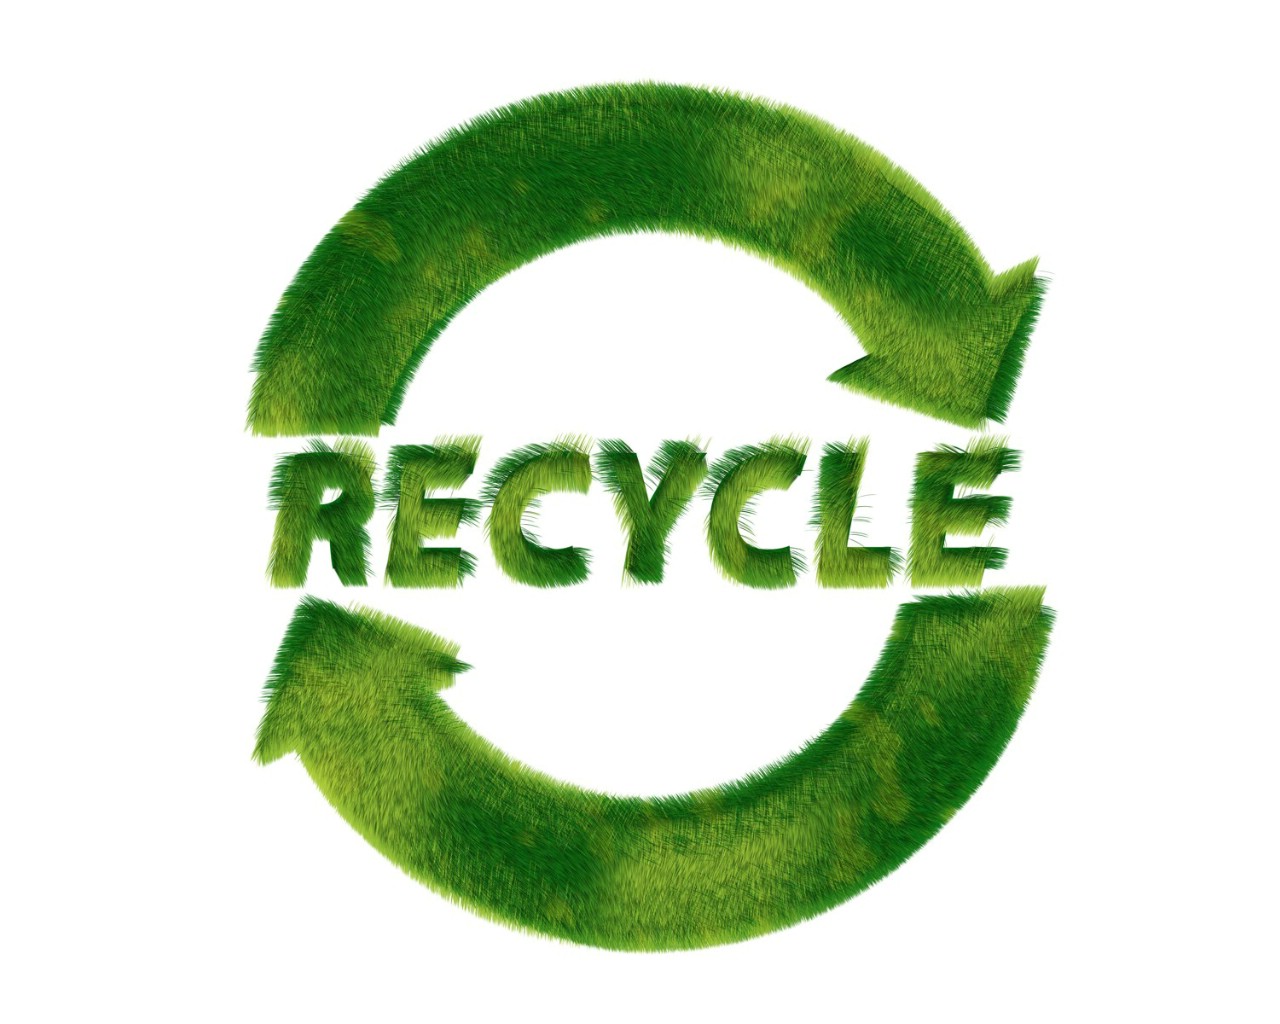 壁纸1280x1024 Recycle Sign Recycle Symbols 1920 1200壁纸 绿色和平环保标志-循环利用壁纸 绿色和平环保标志-循环利用图片 绿色和平环保标志-循环利用素材 插画壁纸 插画图库 插画图片素材桌面壁纸